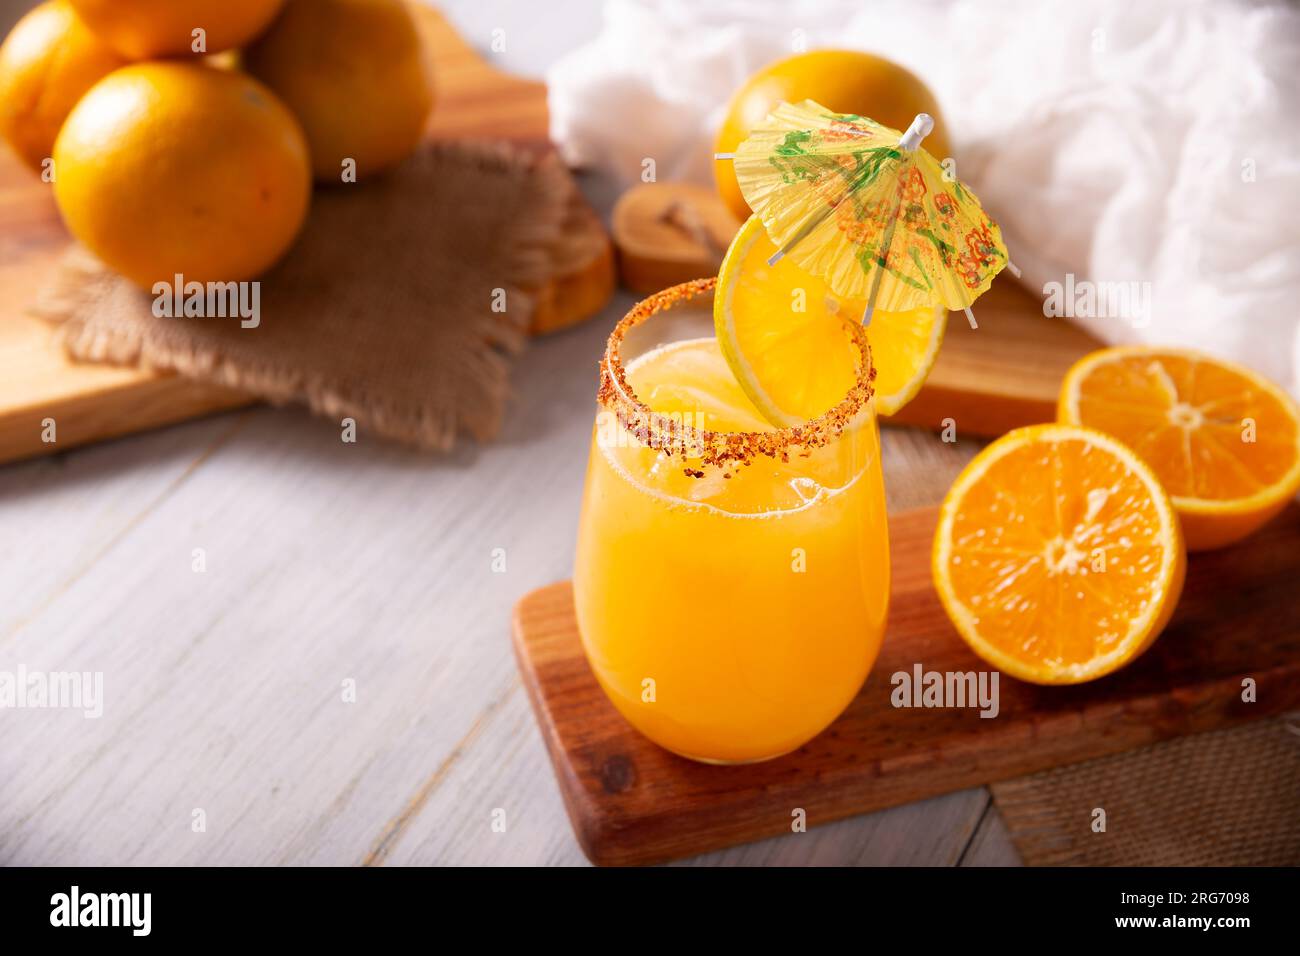 Rinfrescante orangeade fatta in casa, una bevanda idratante naturale a base di succo d'arancia, molto popolare in diversi paesi, ideale per bere nelle estati calde. Foto Stock